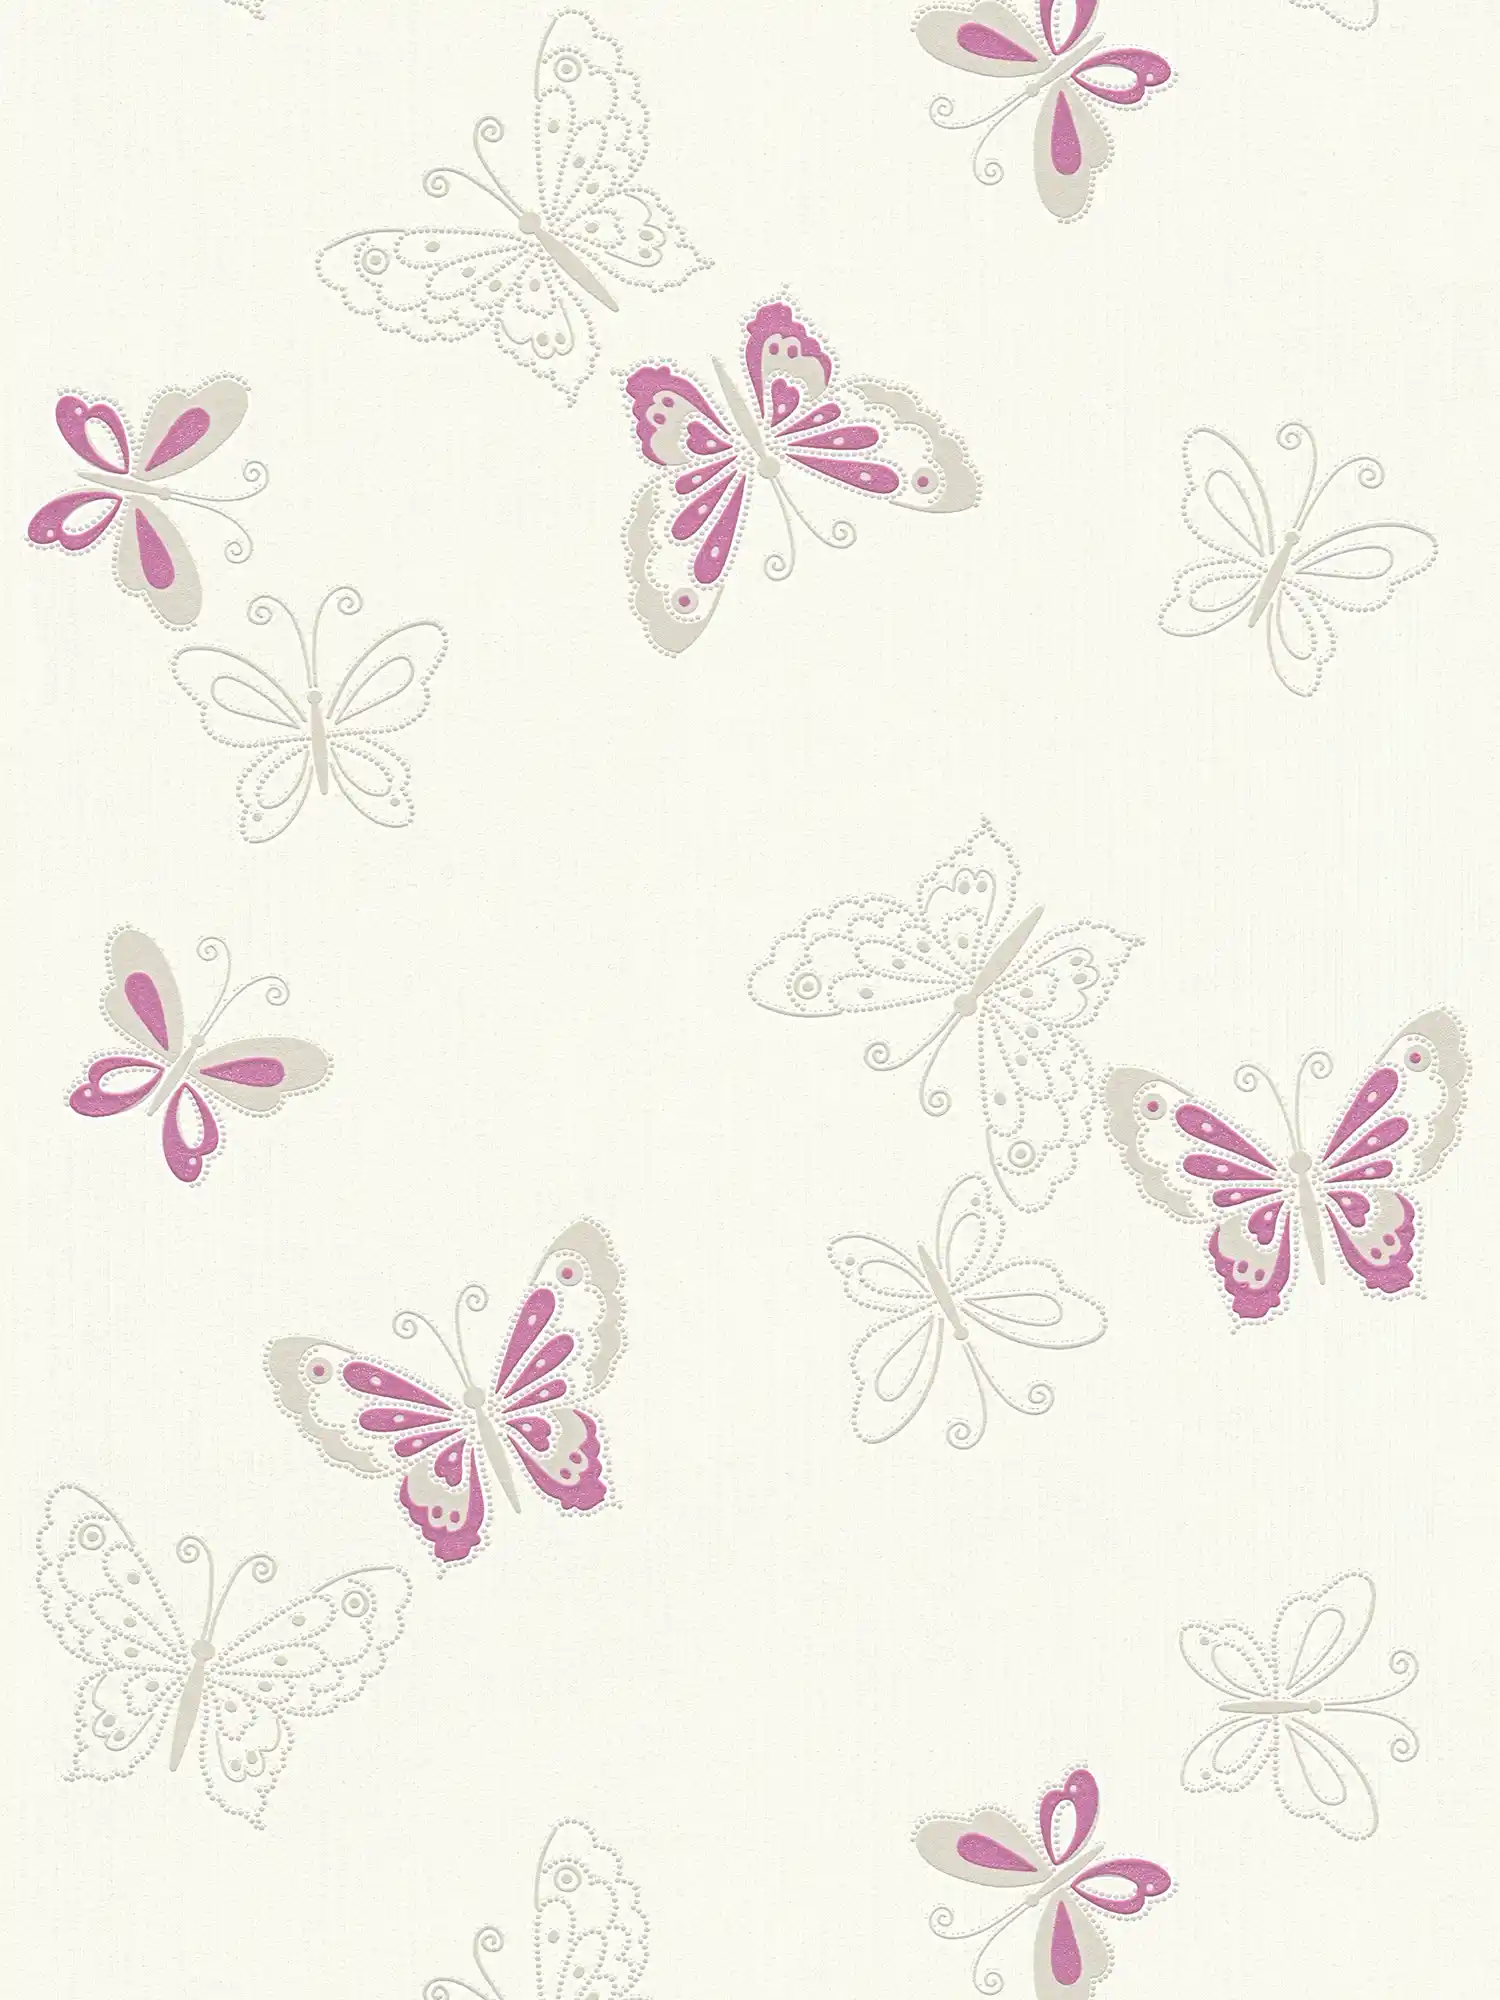         Nursery wallpaper with butterfly - beige, purple
    